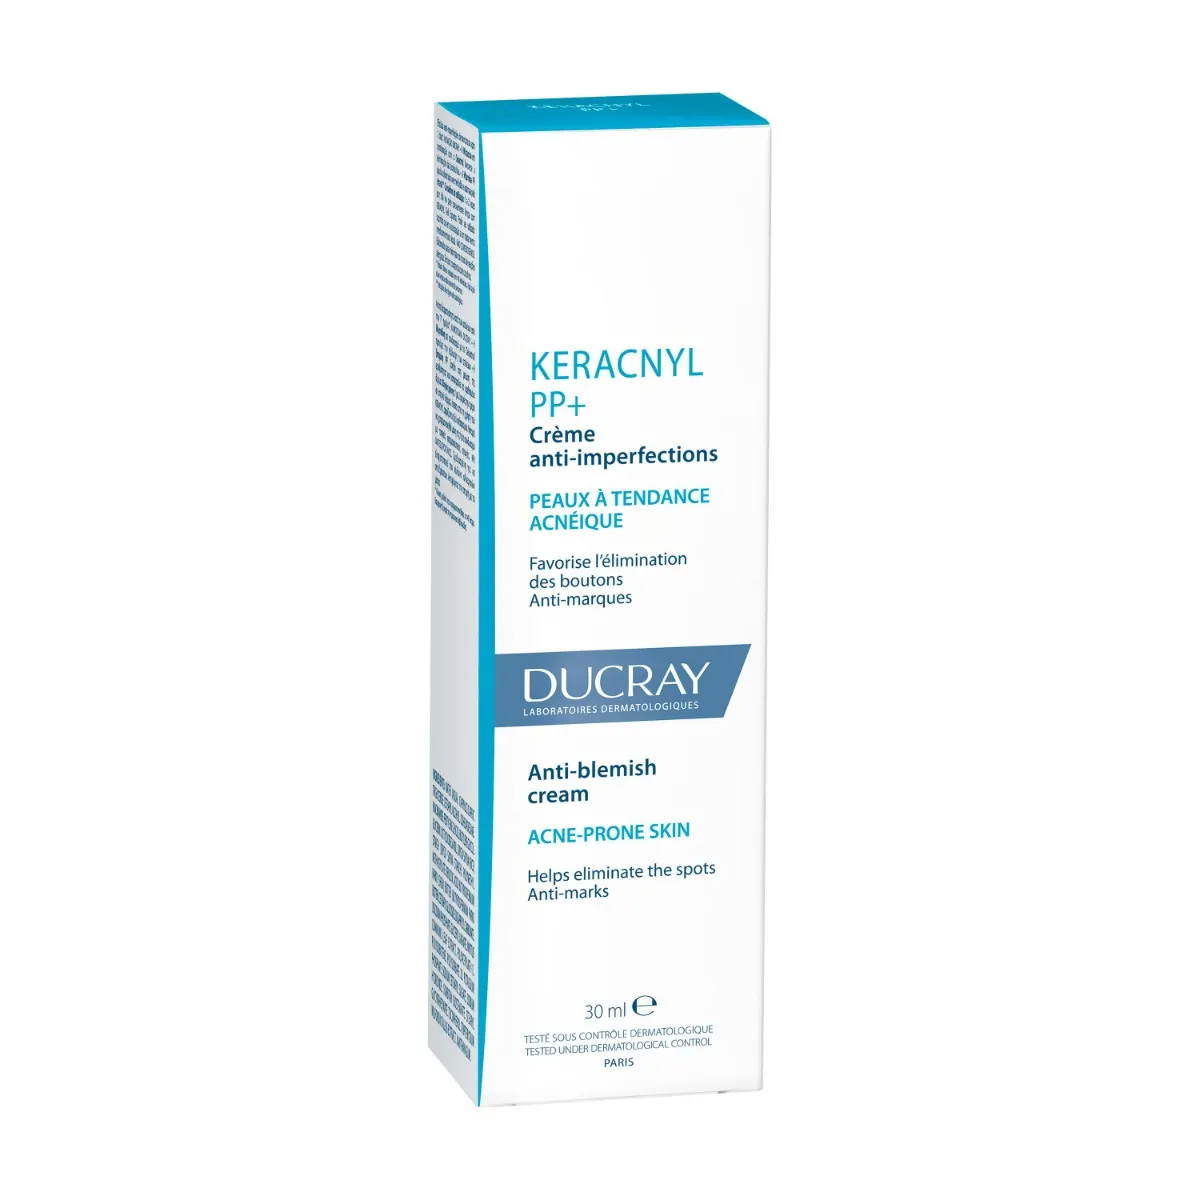 Keracnyl PP+ Ducray Crema Anti-imperfezioni 30 ml Per Pelle Grassa e Acneica